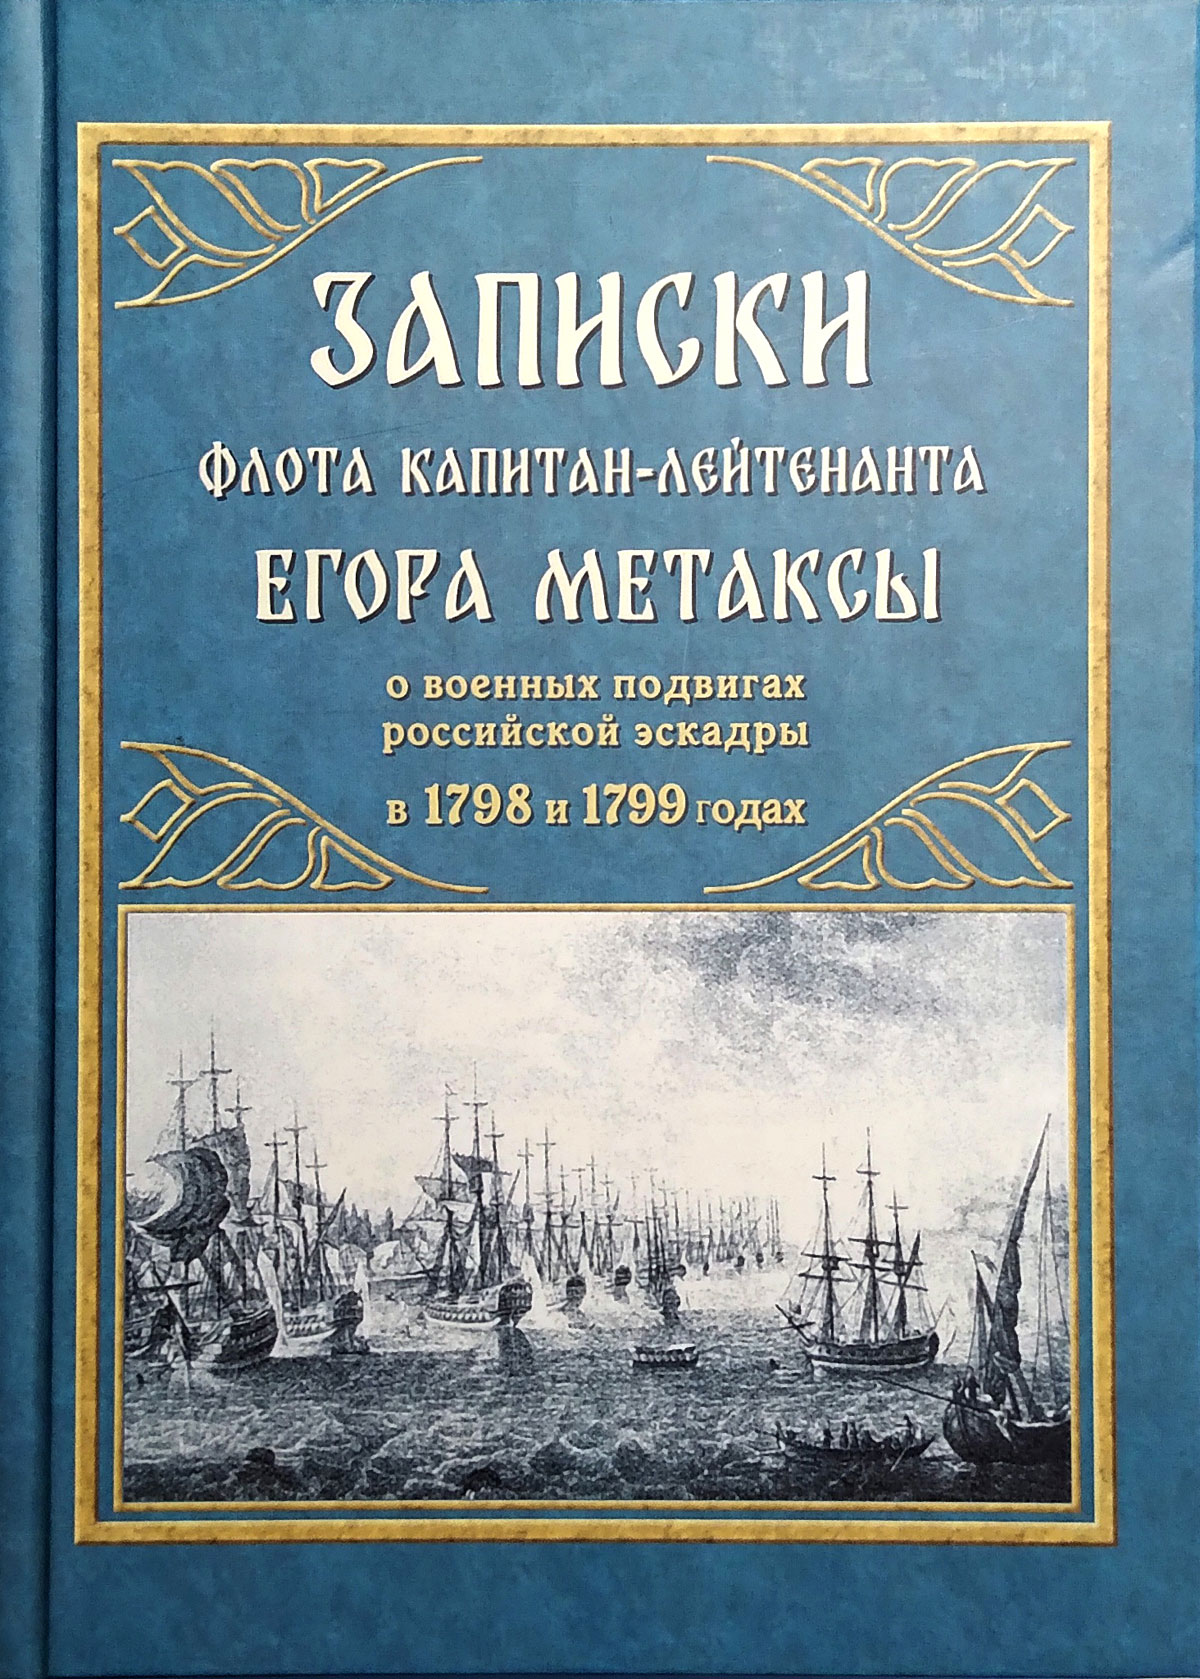 Записки флота капитан-лейтенанта Егора Метаксы о военных подвигах российской эскадры в 1798 и 1799 годах